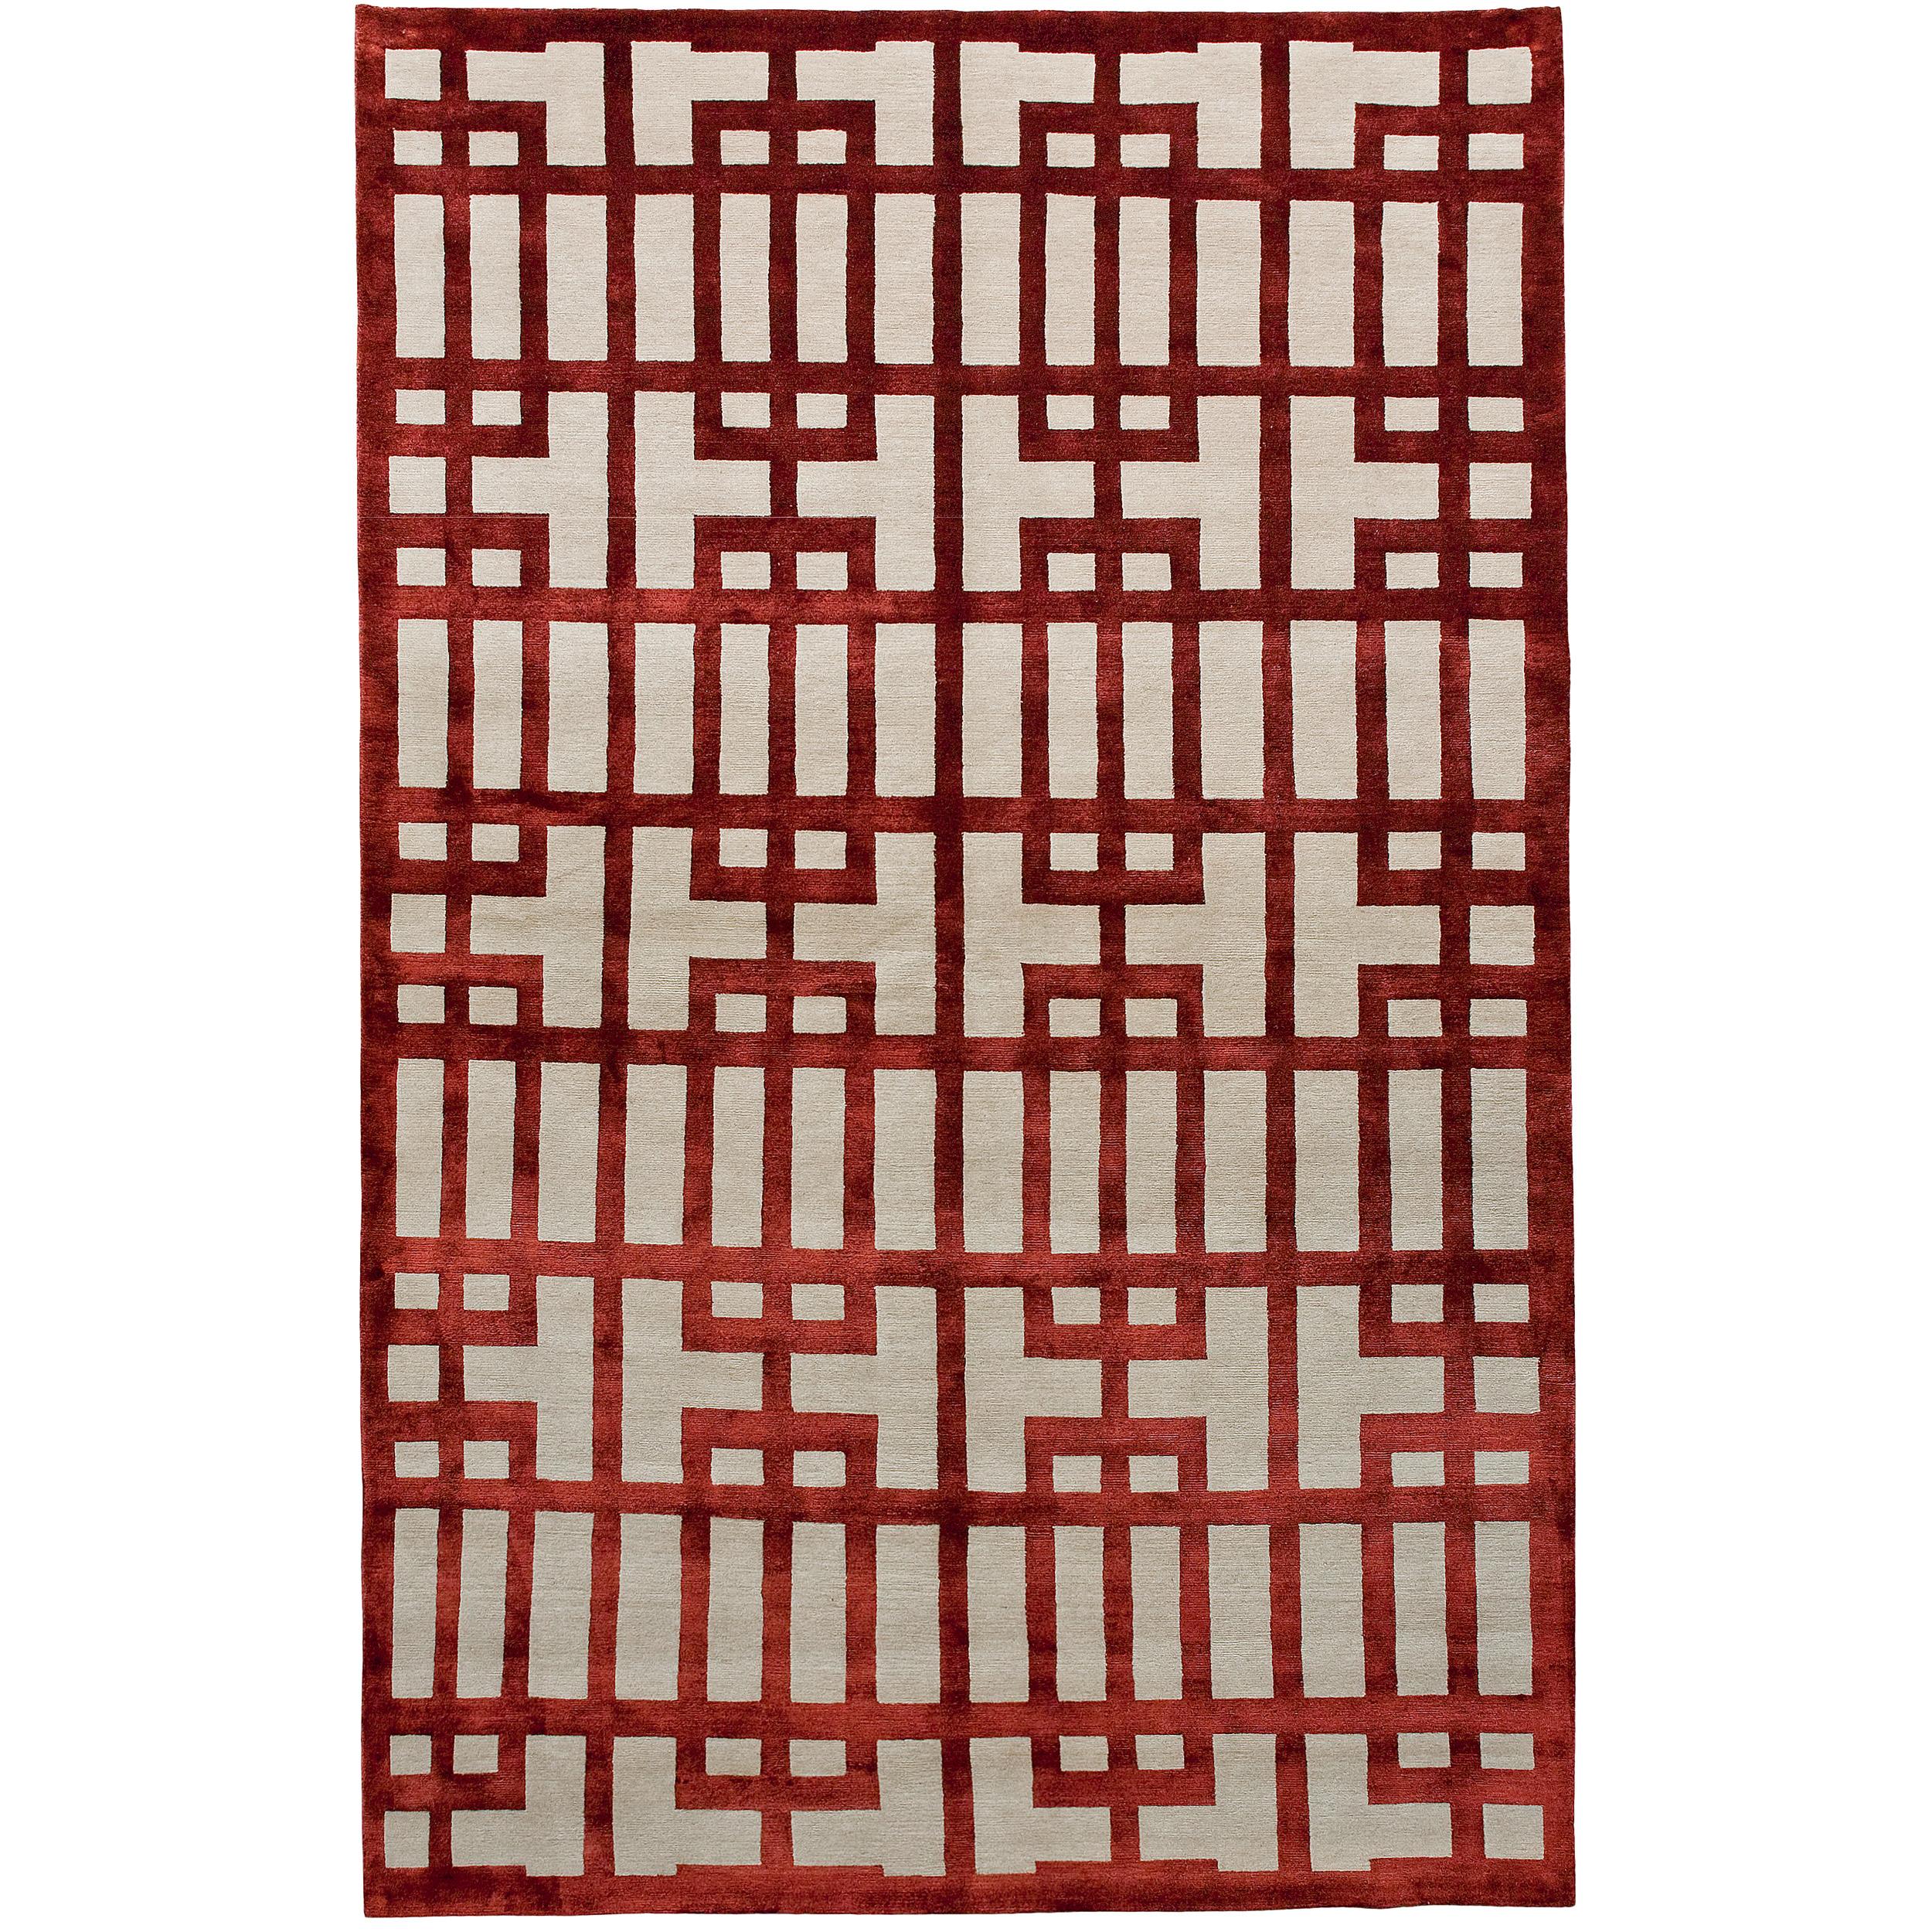 Jeder Zentimeter dieses Teppichs ist ein Werk der Liebe, sorgfältig handgeknüpft von geschickten Kunsthandwerkern in Nepal. Das Design spiegelt ein modernes, abstraktes Motiv wider, das anmutig mit zeitloser Ästhetik verschmilzt. Er verbindet